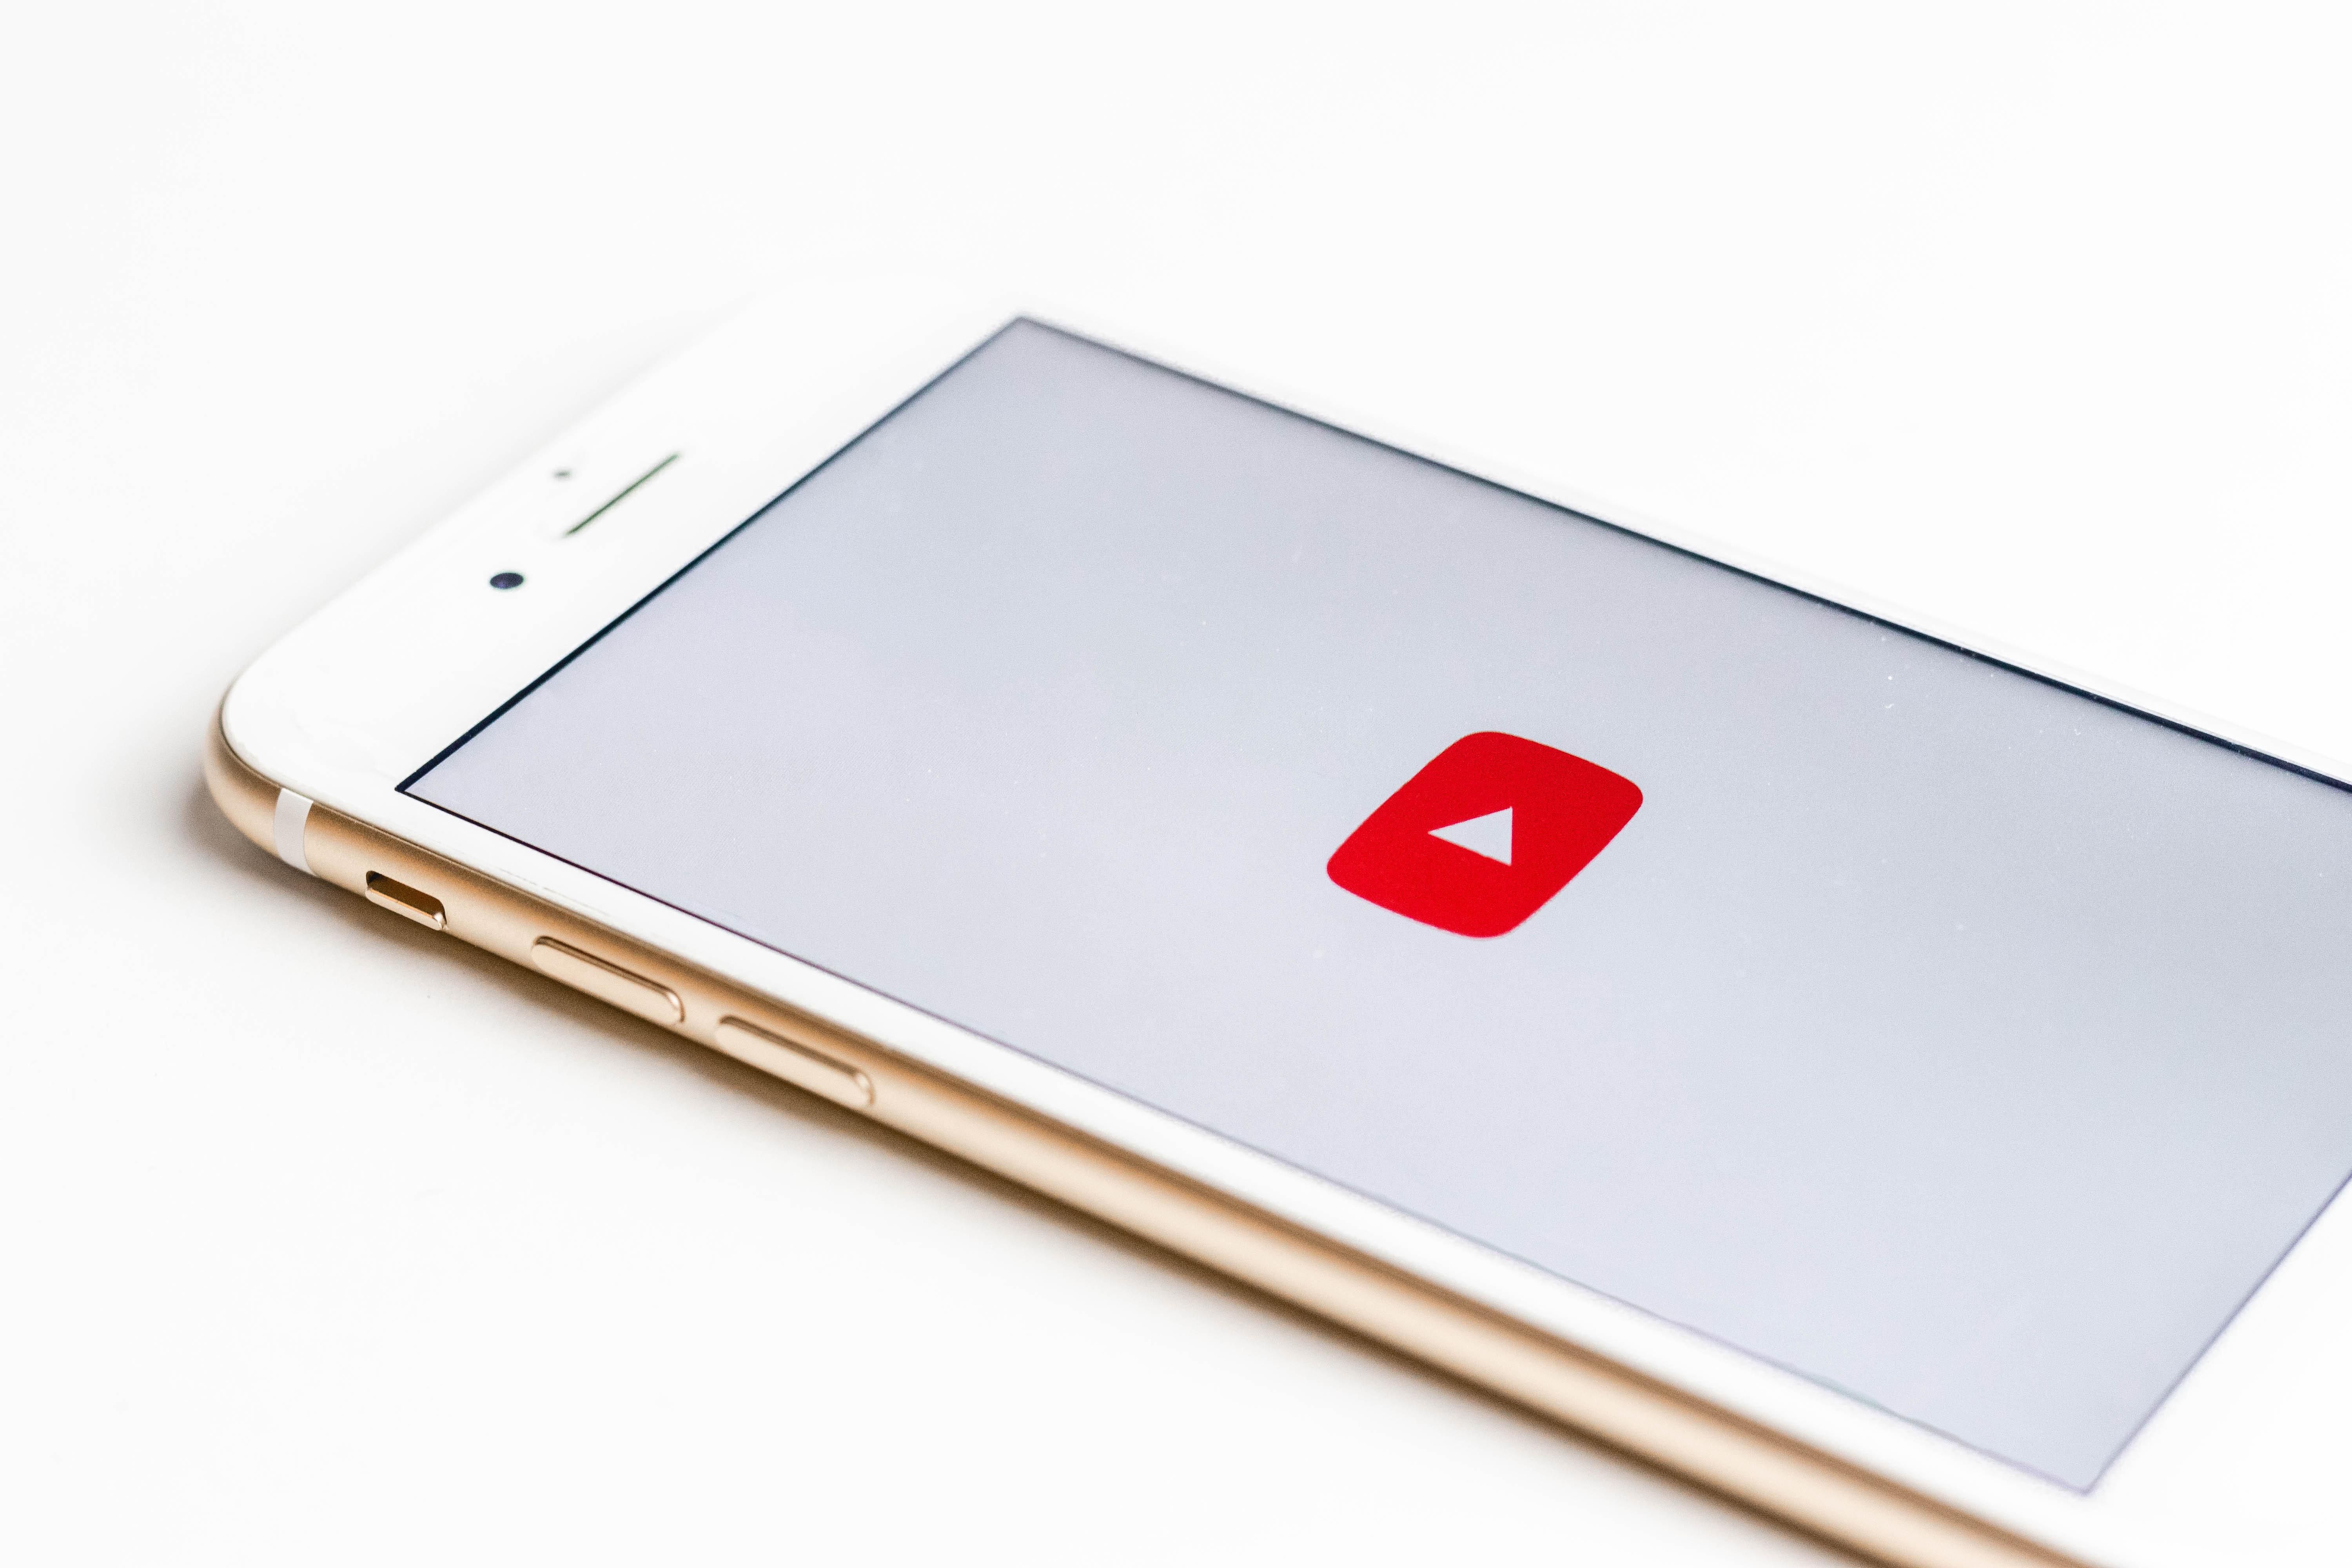 Rosegold színű okostelefonon valaki épp megnyitotta a YouTube alkalmazást, a háttér fehér